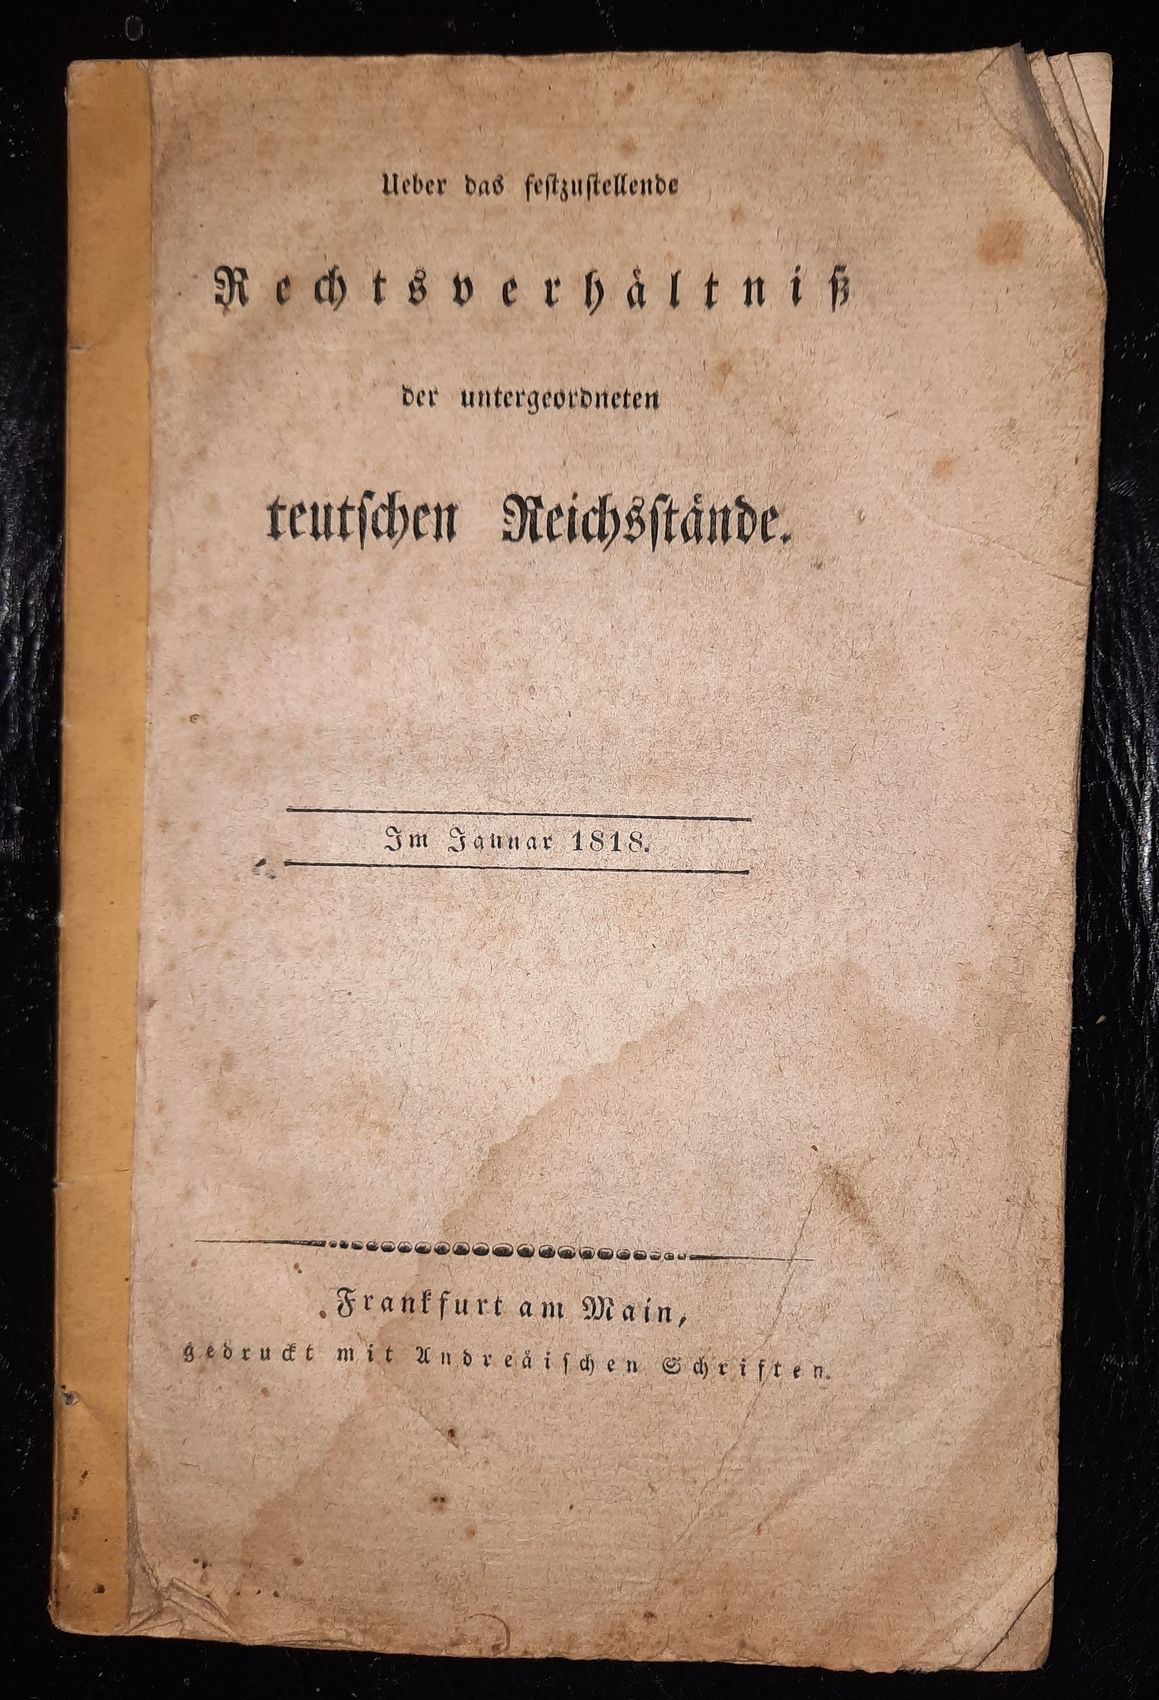  - Ueber das festzustellende Rechtsverhltniss der untergeordneten teutschen Reichsstnde. Im Januar 1818..